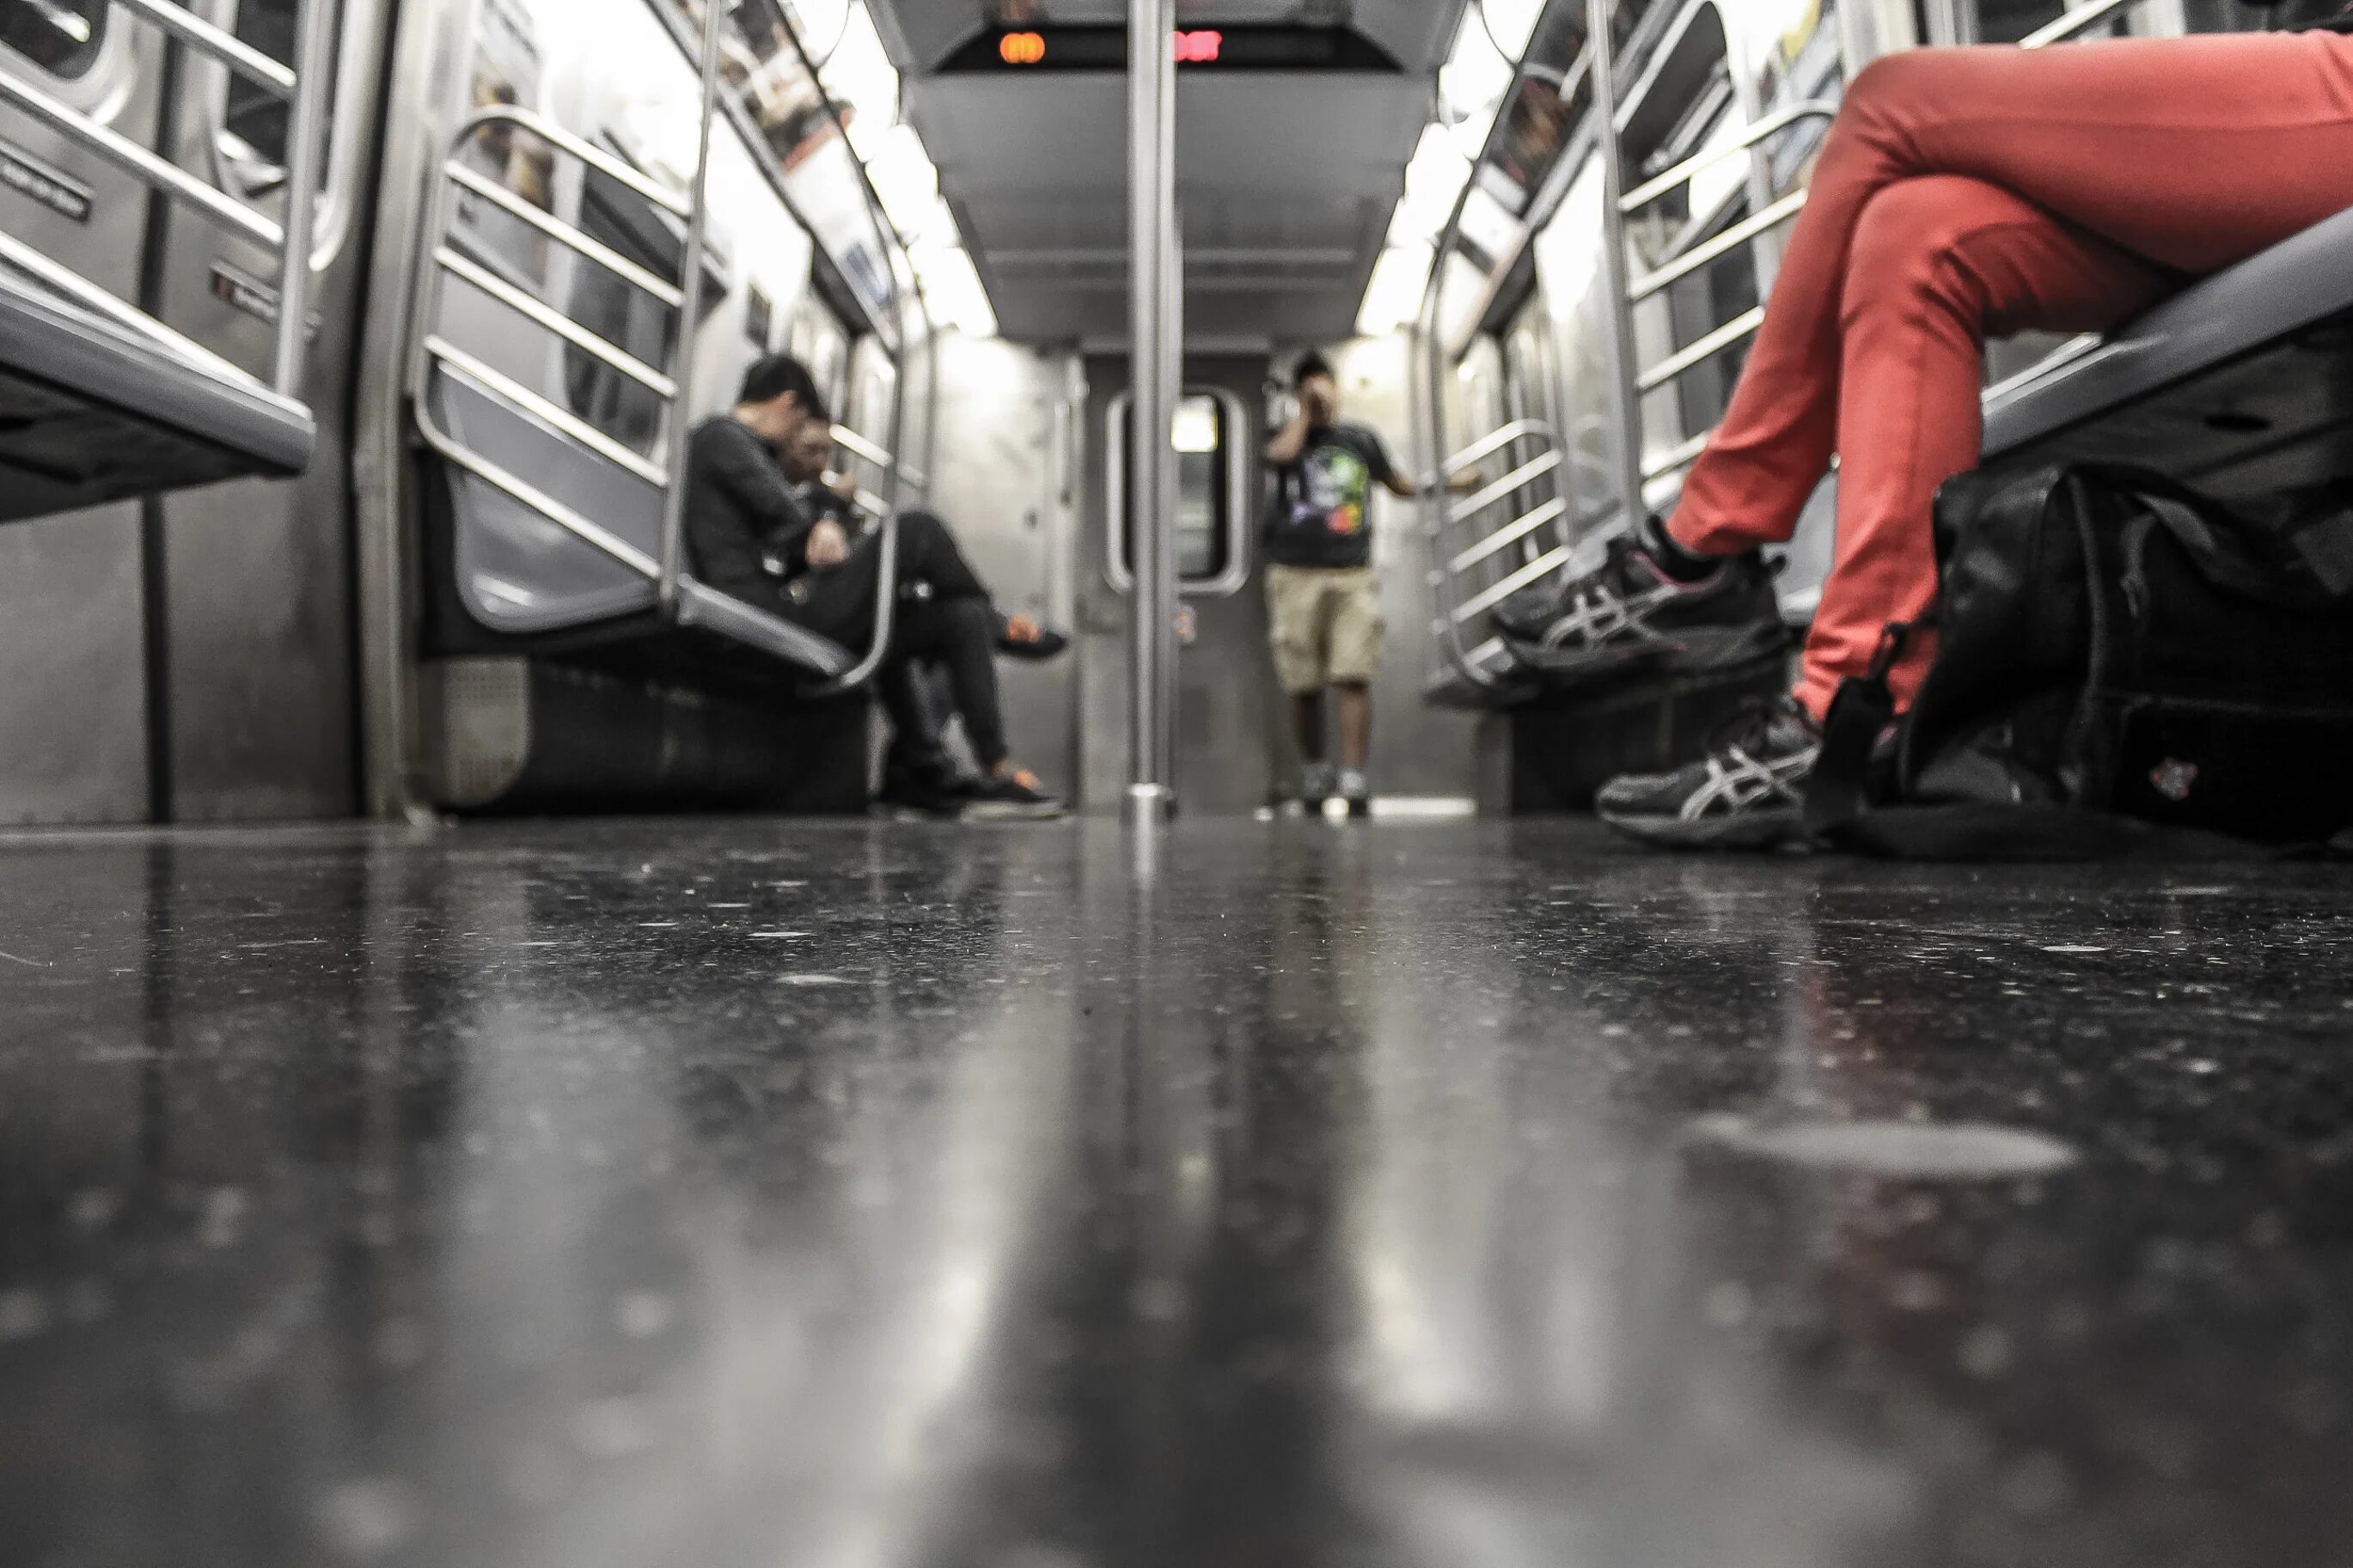 Public transportation. Фотографии людей в транспорте. Социальная реклама в метро Нью-Йорка. Люди в метро фото Москва. Игра развоз людей на метро.